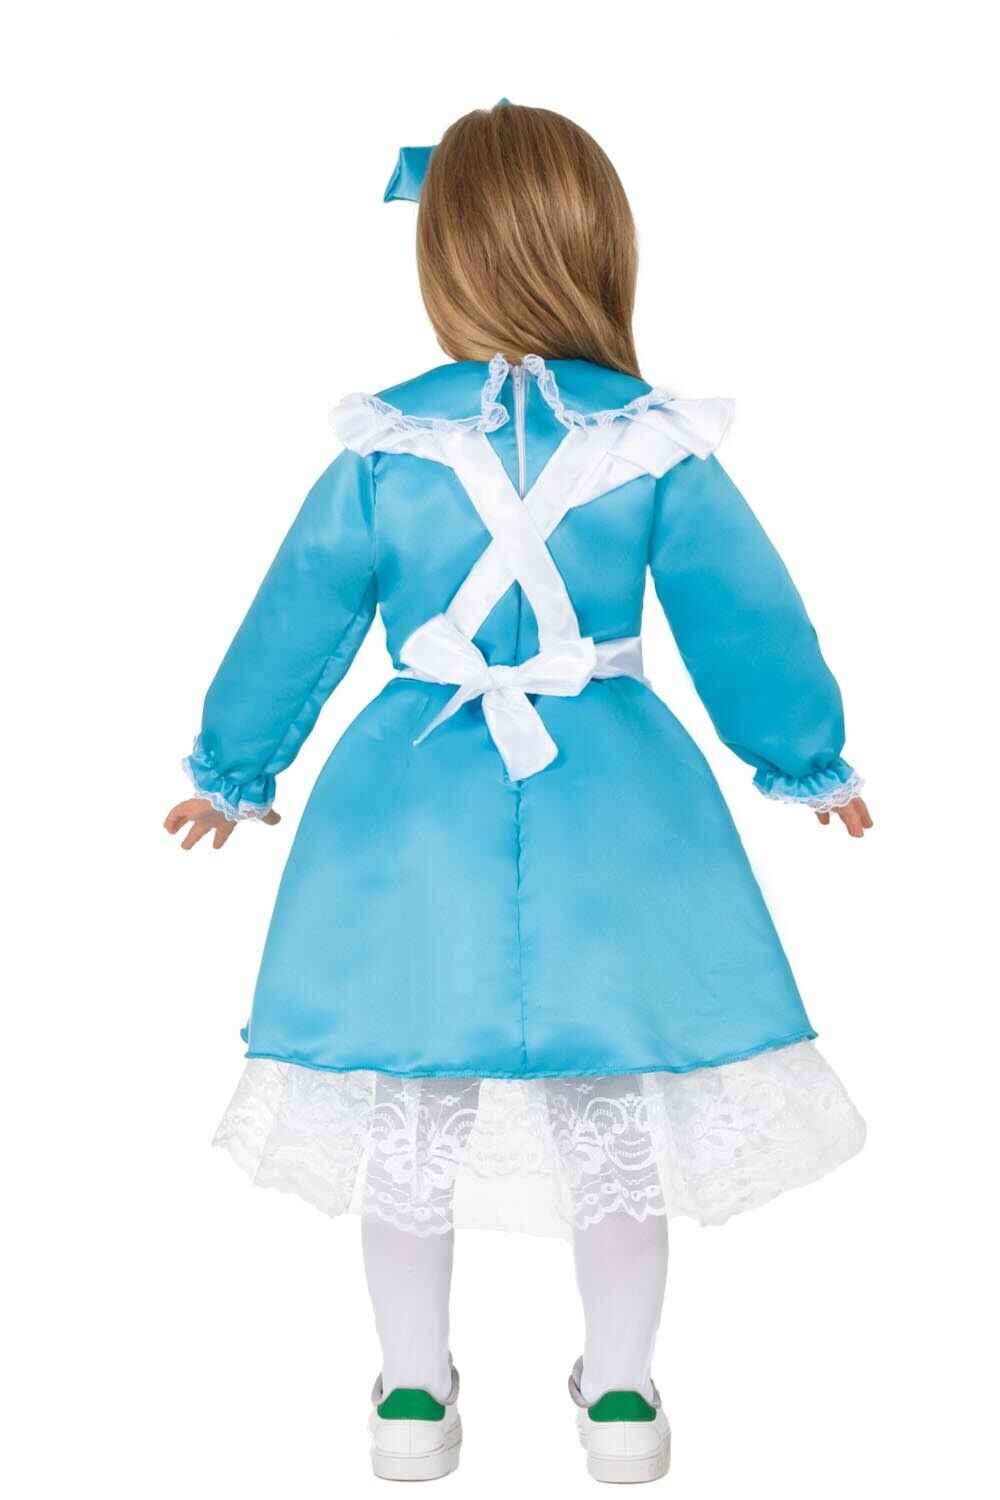 Costume Alicenel paese delle meraviglie Bambina ragazza 3-4 anni a 10-11 anni